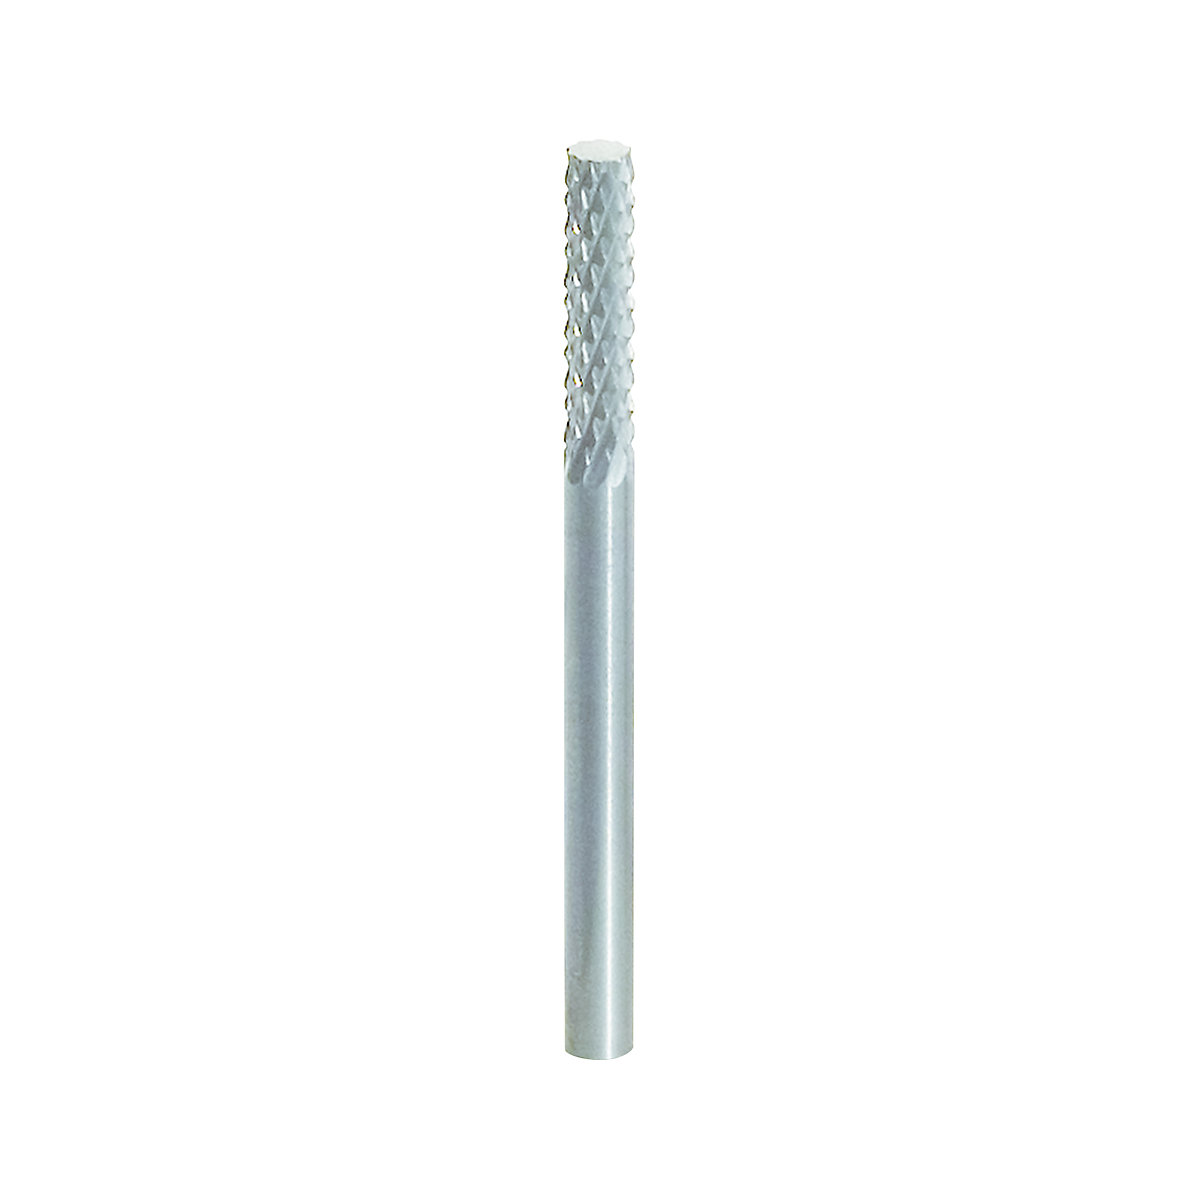 HM cylinder milling burr, form A – KS Tools